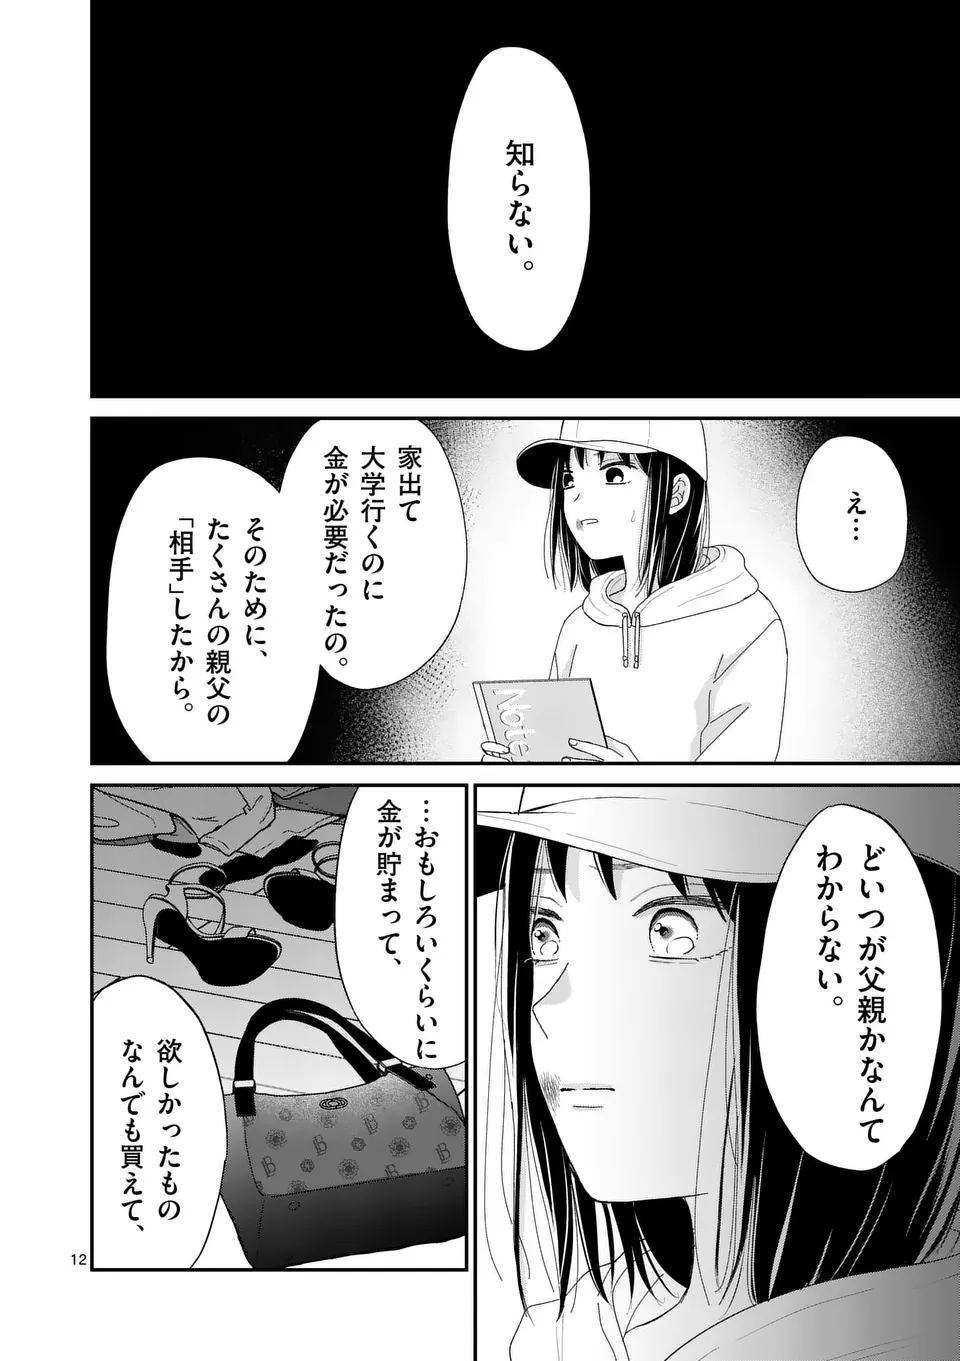 Atashi wo Ijimeta Kanojo no Ko - Chapter 4.1 - Page 12